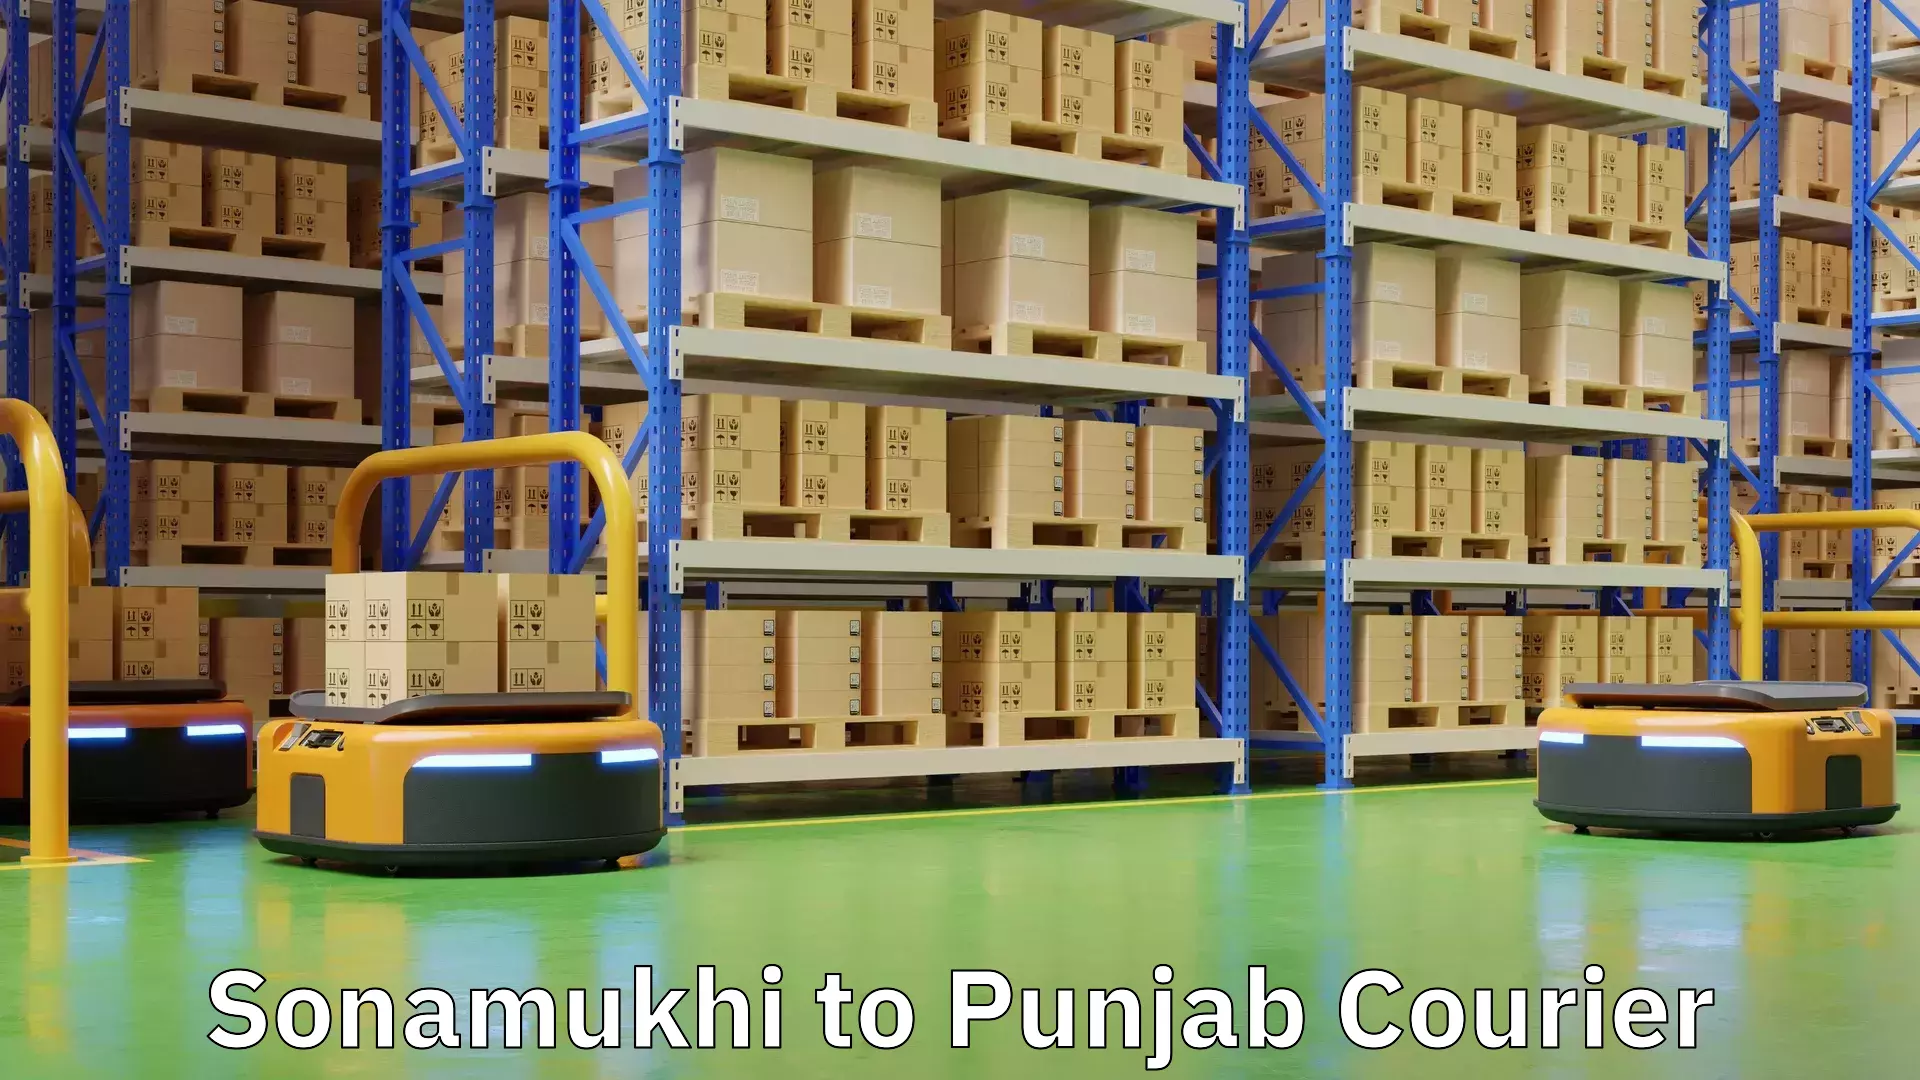 Holiday shipping services Sonamukhi to Punjab